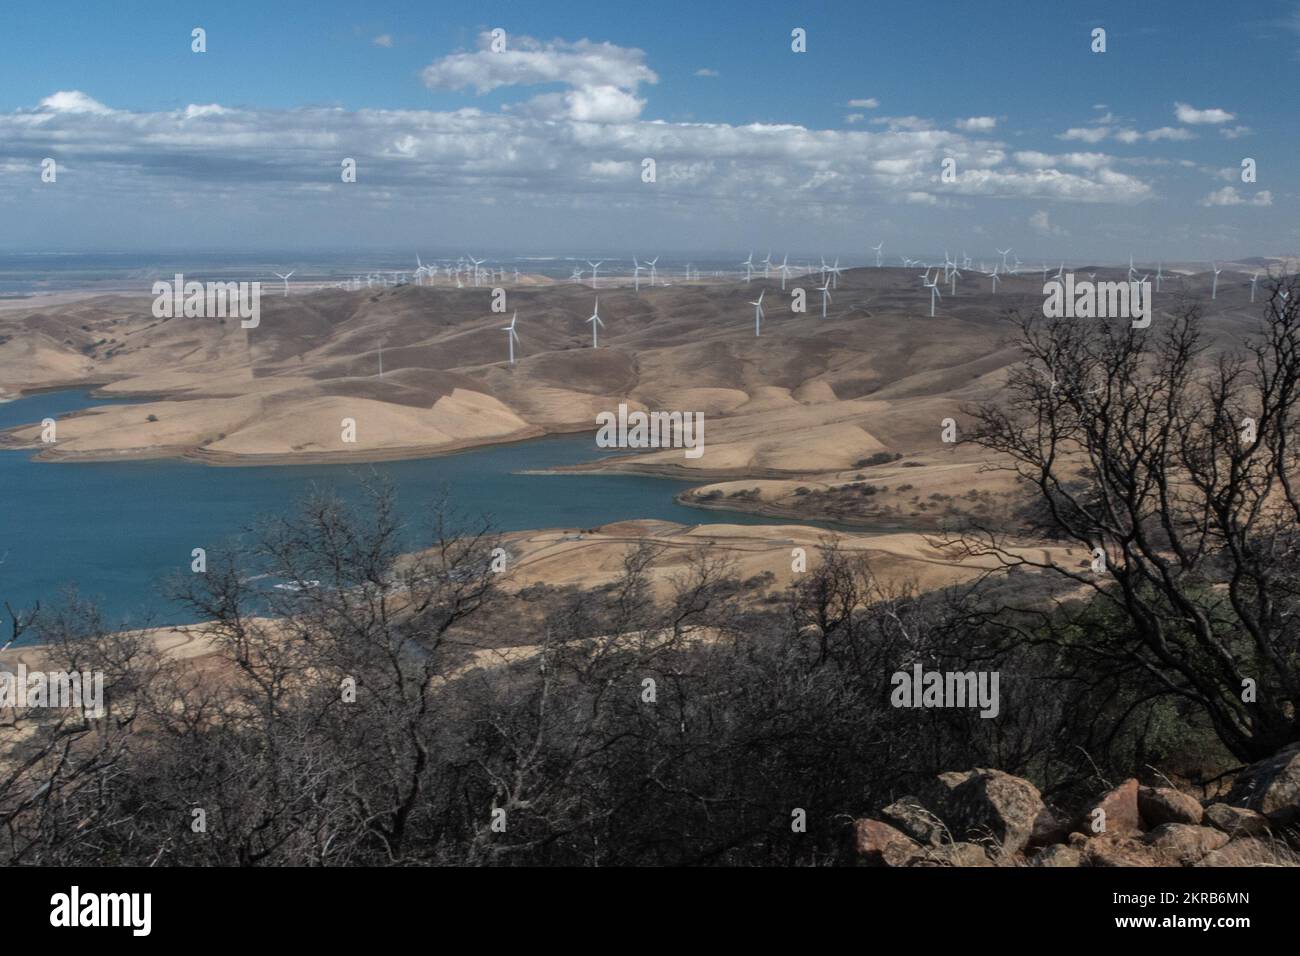 Vue sur le réservoir de Los Vaqueros et les collines parsemées d'éoliennes en Californie, aux États-Unis. Banque D'Images